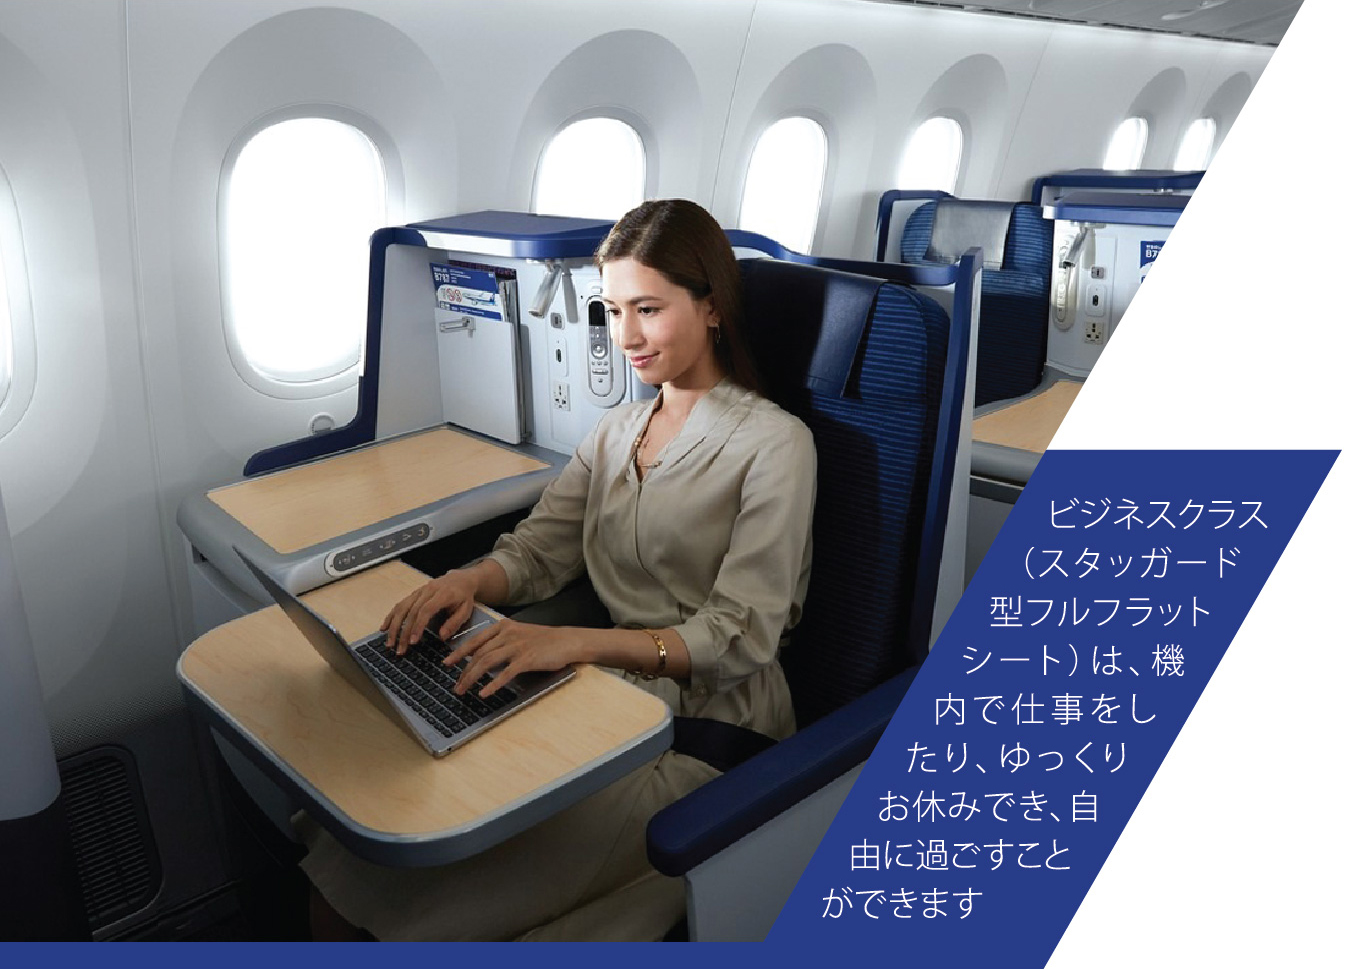 ビジネスクラス（スタッガード型フルフラットシート）は、機内で仕事をしたり、ゆっくりお休みでき、自由に過ごすことができます